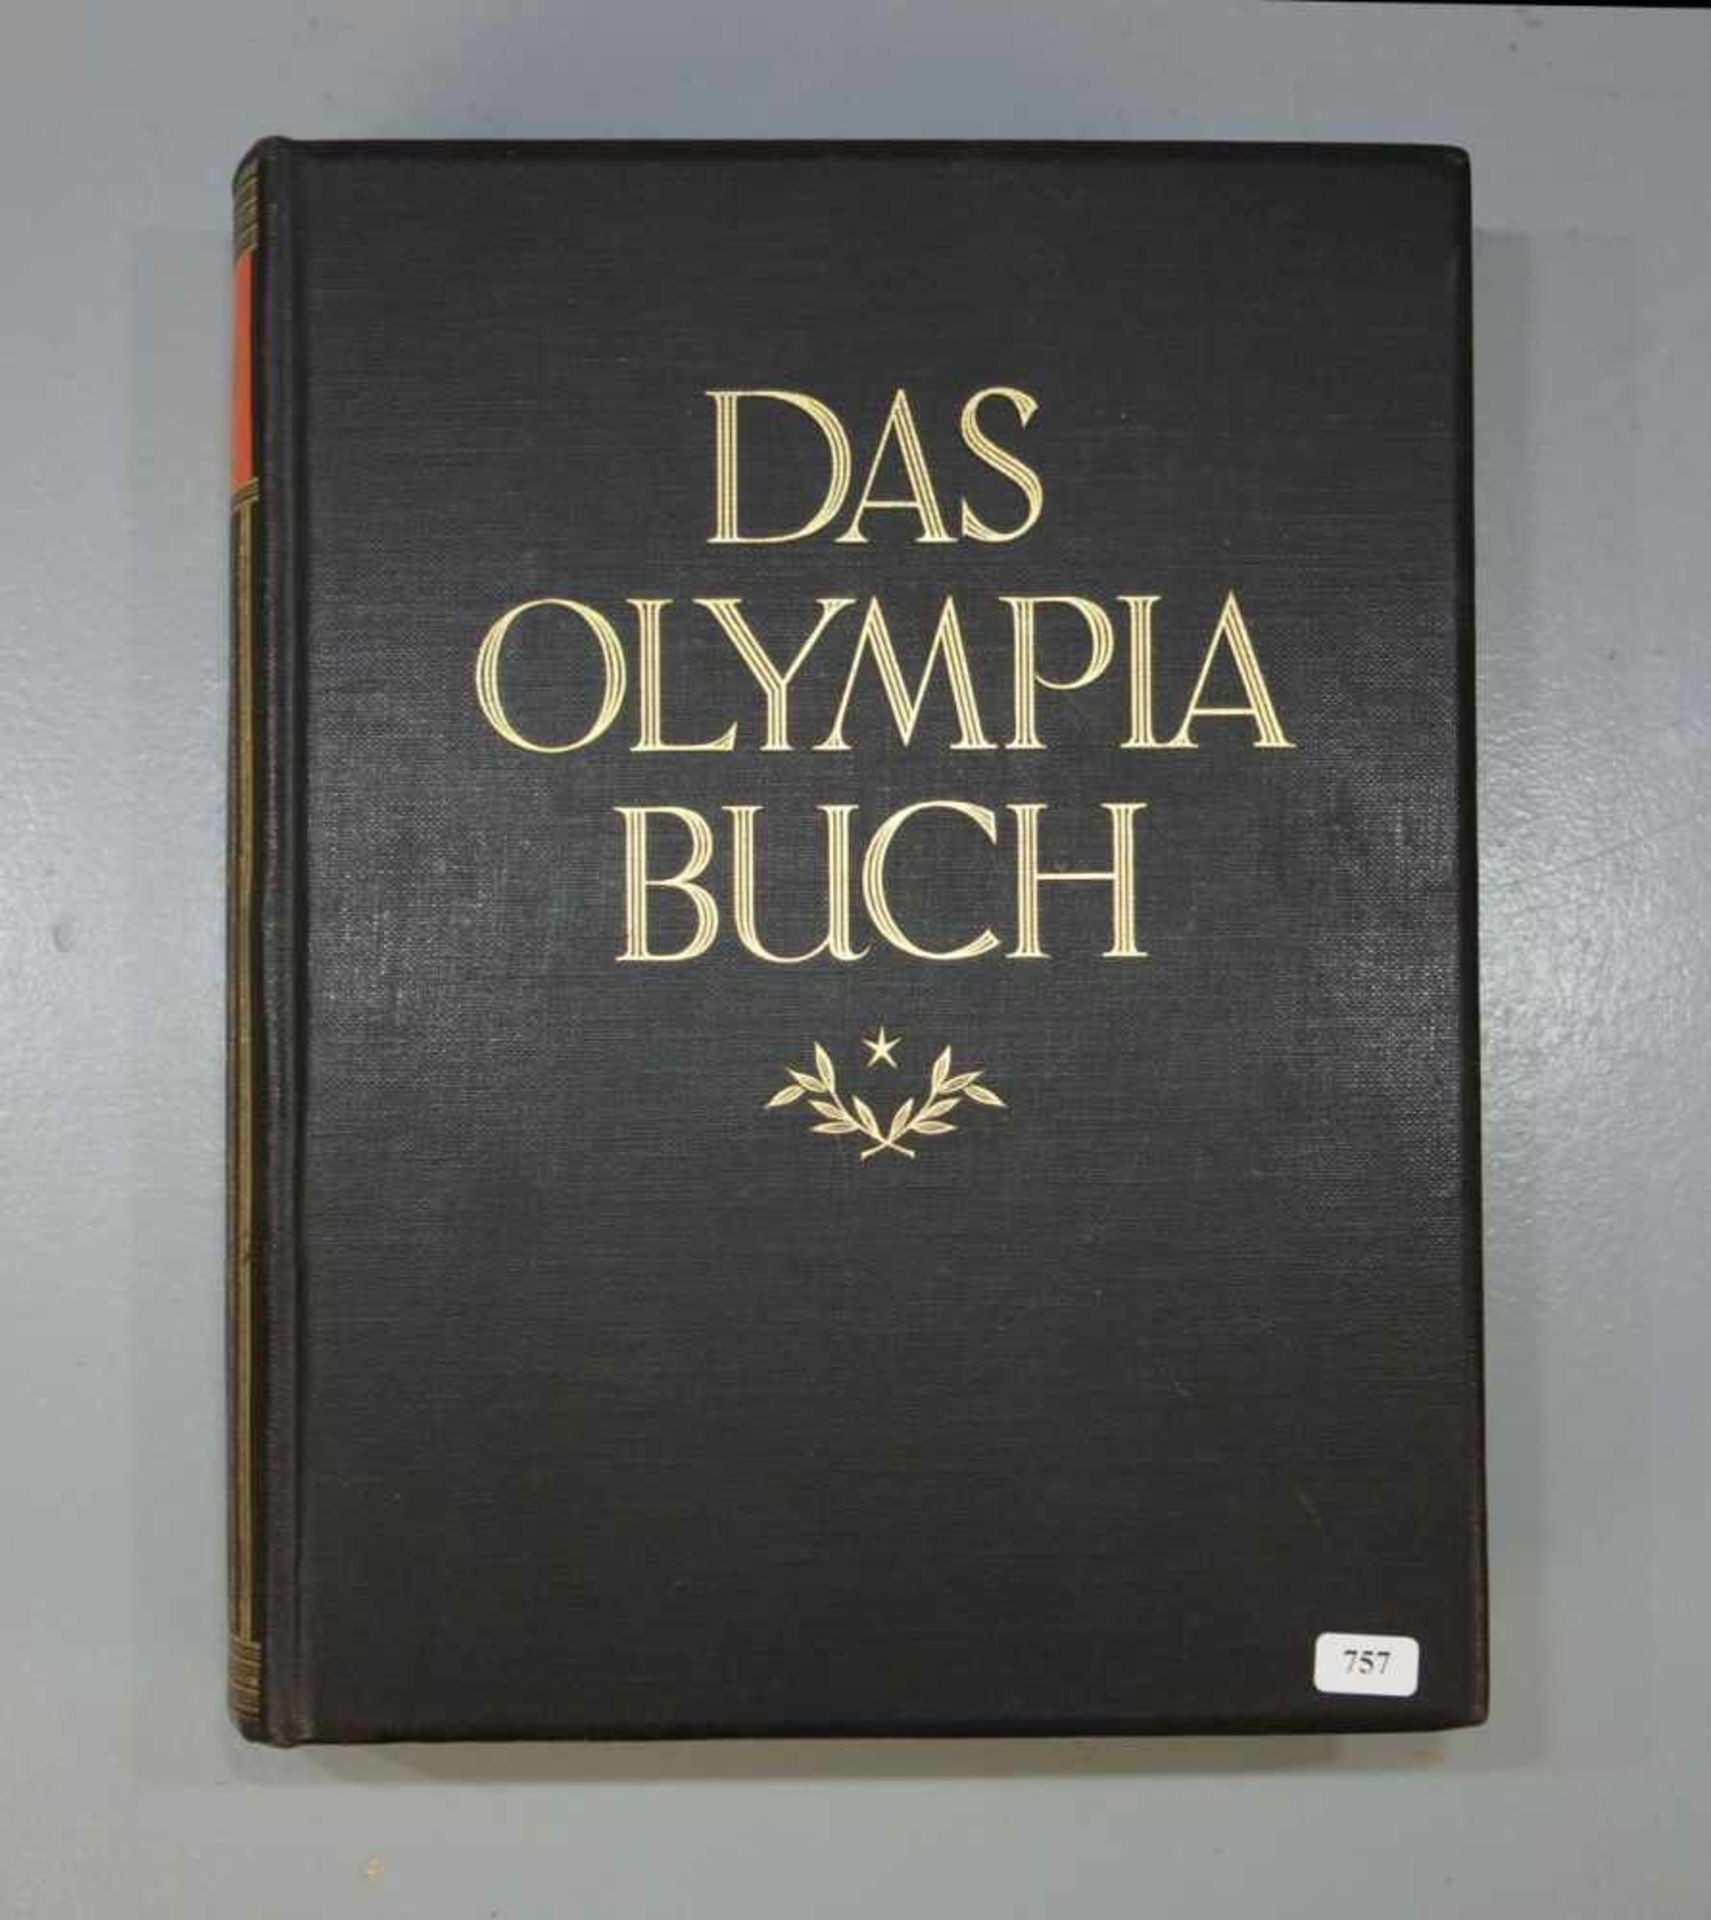 "DAS OLYMPIA BUCH", Halbledereinband. Herausgegeben im Auftrage des Deutschen Reichsausschusses